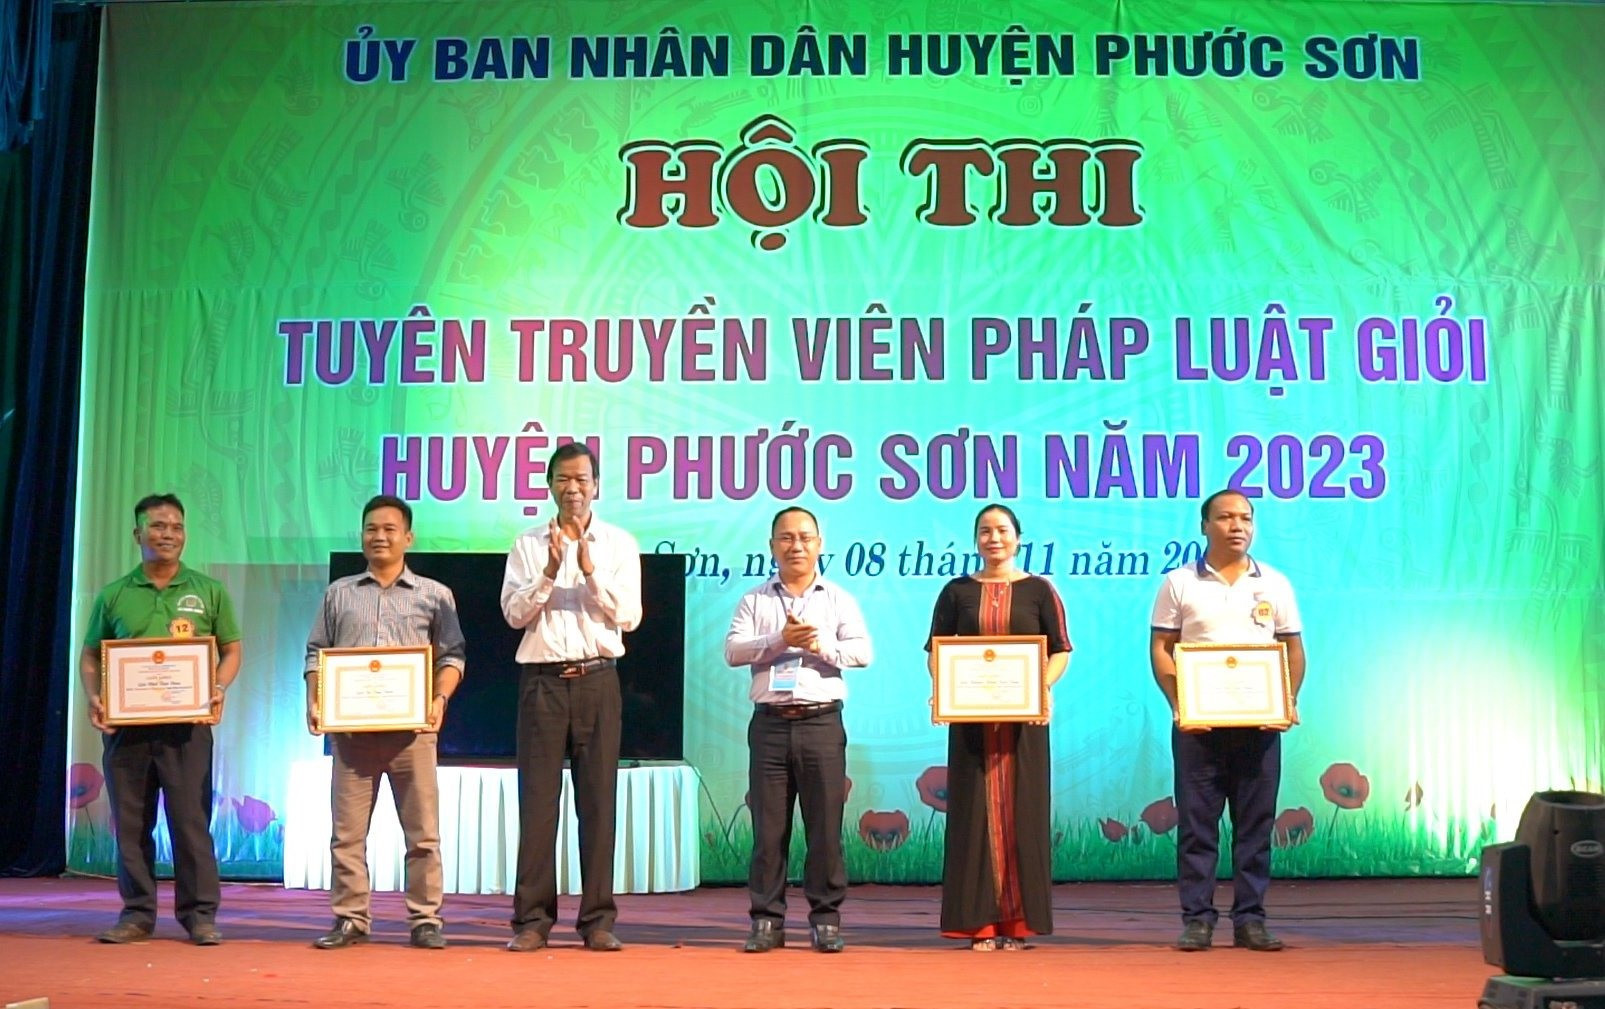 Lãnh đạo huyện Phước Sơn trao giải cho các đội thi.